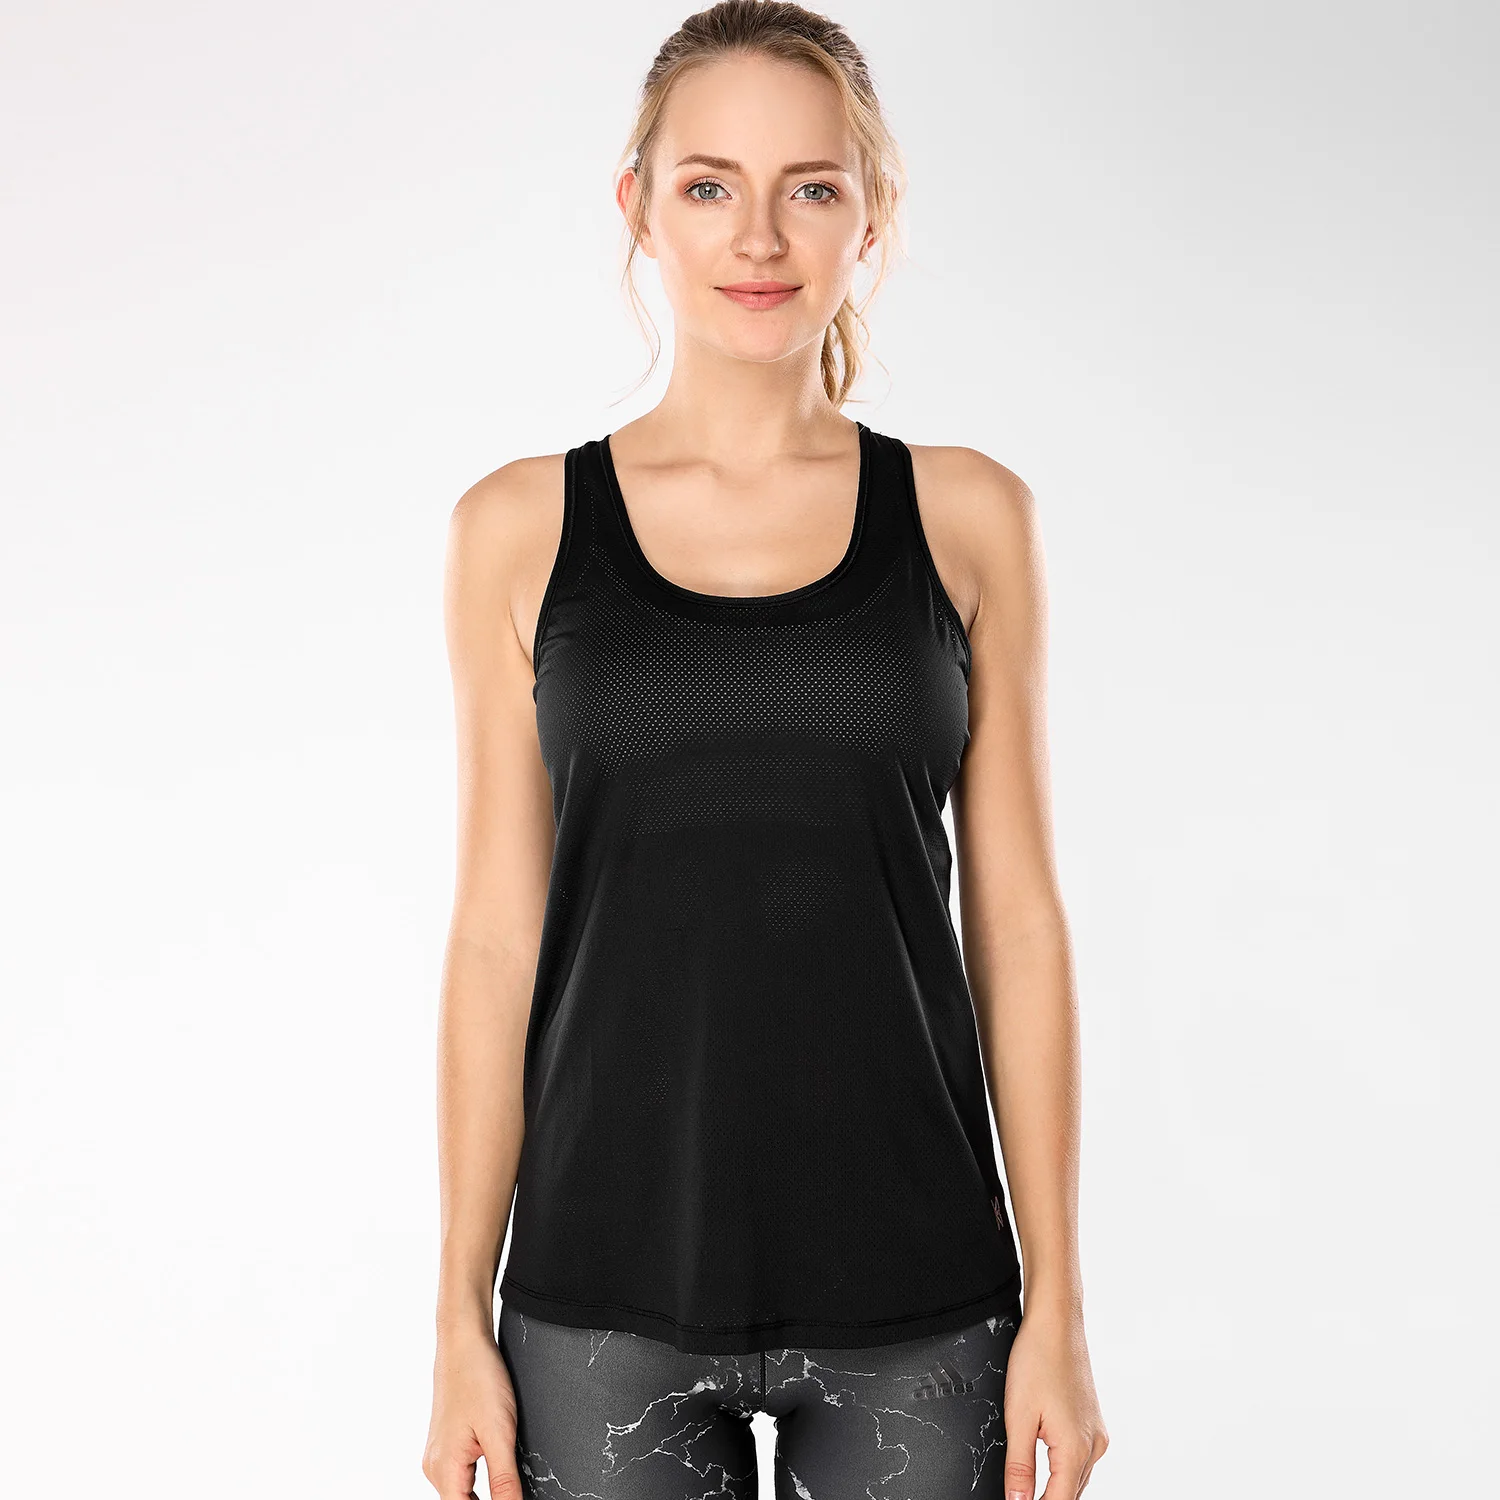 Женская одежда для активного отдыха, крутые сетчатые топы для тренировок с перекрестной спинкой - Цвет: Black01